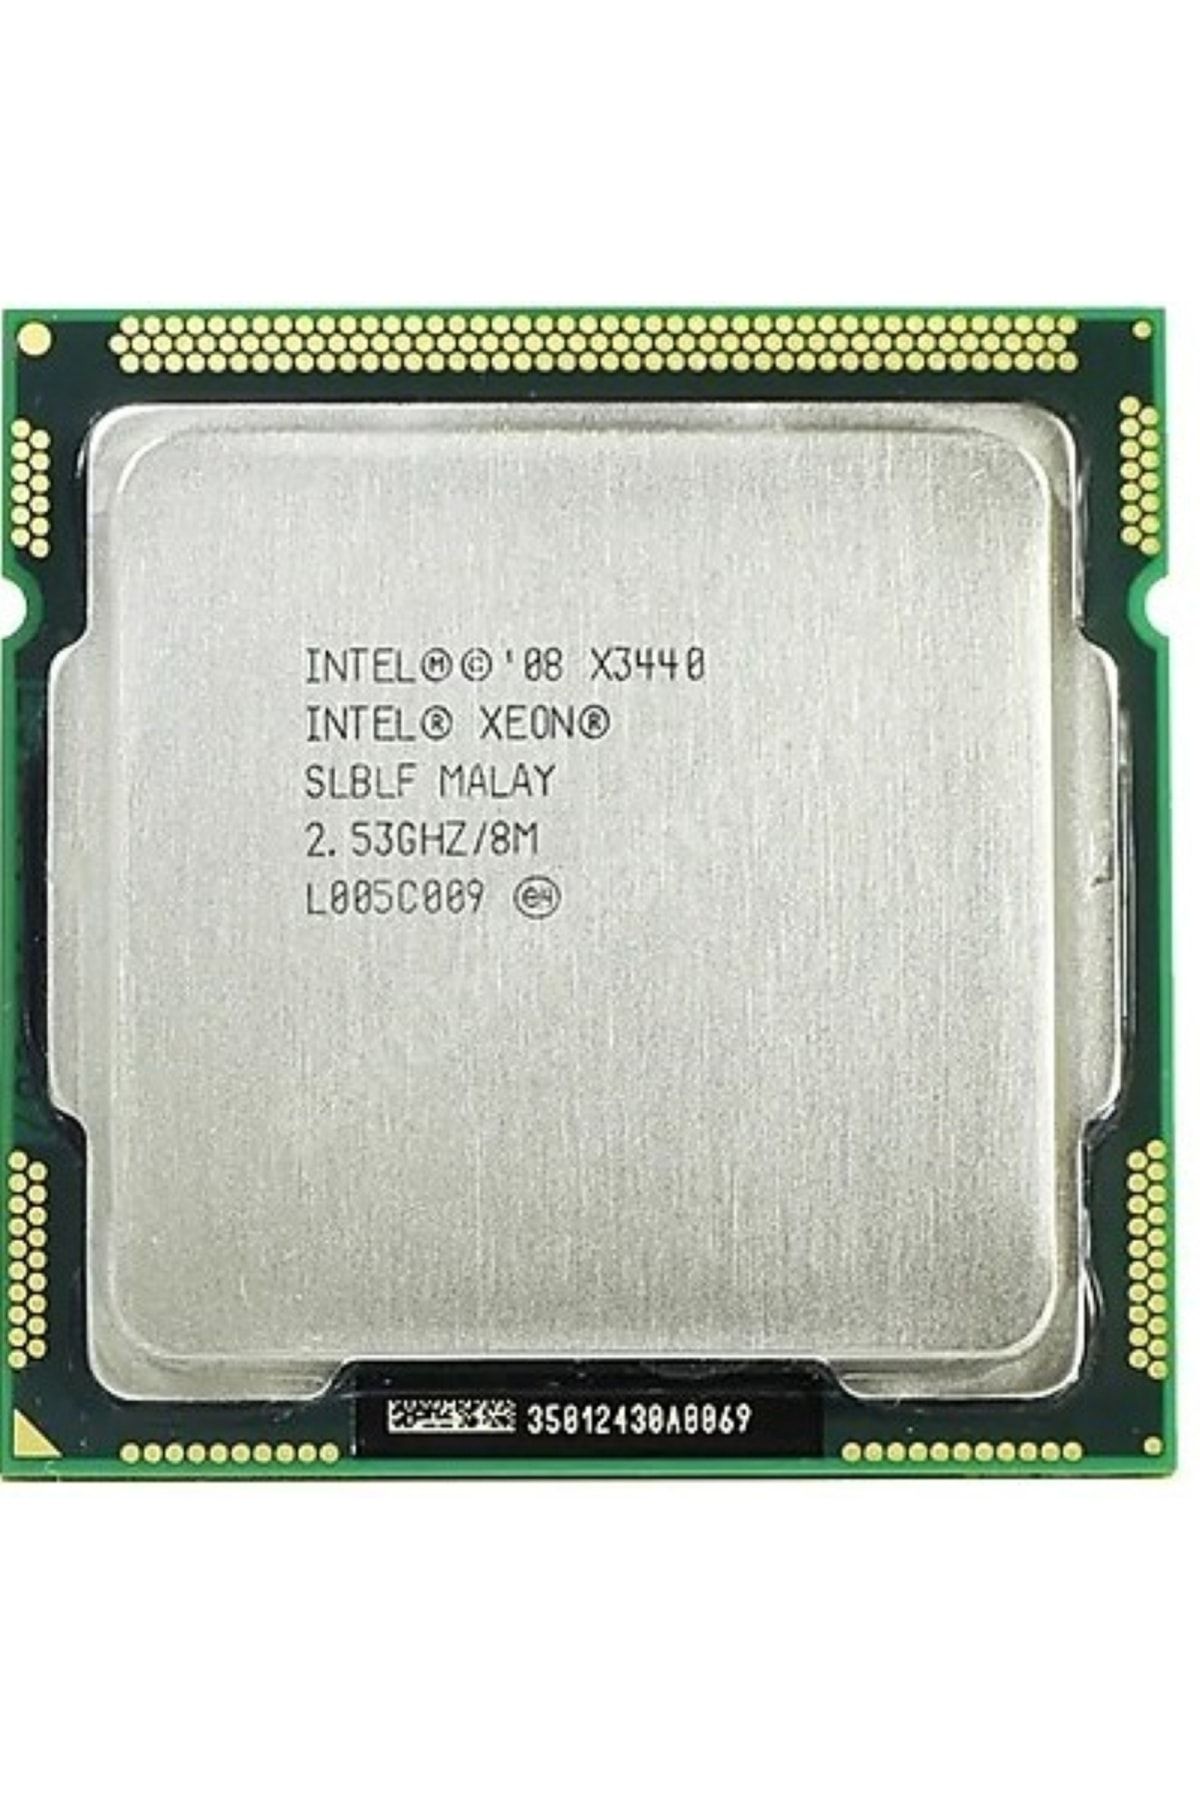 Intel Xeon X3440 2.53GHz LGA1156 8 MB Cache 95W İşlemci Yenilenmiş